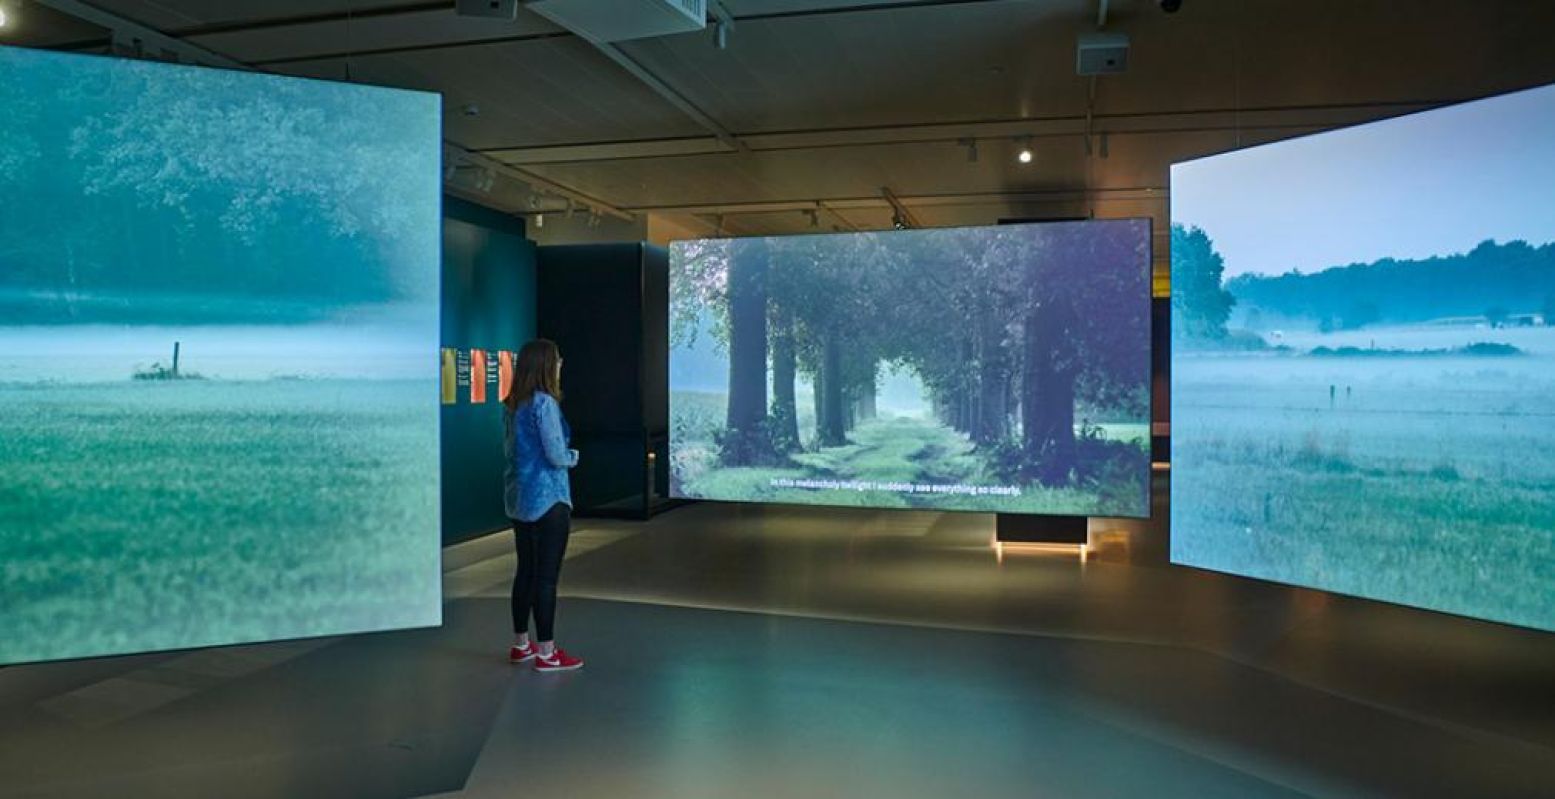 Een film op drie grote schermen met nostalgische beelden van Noord-Brabant brengt je terug in de tijd dat Van Gogh hier leefde. Foto: Het Noordbrabants Museum © Jan-Kees Steenman